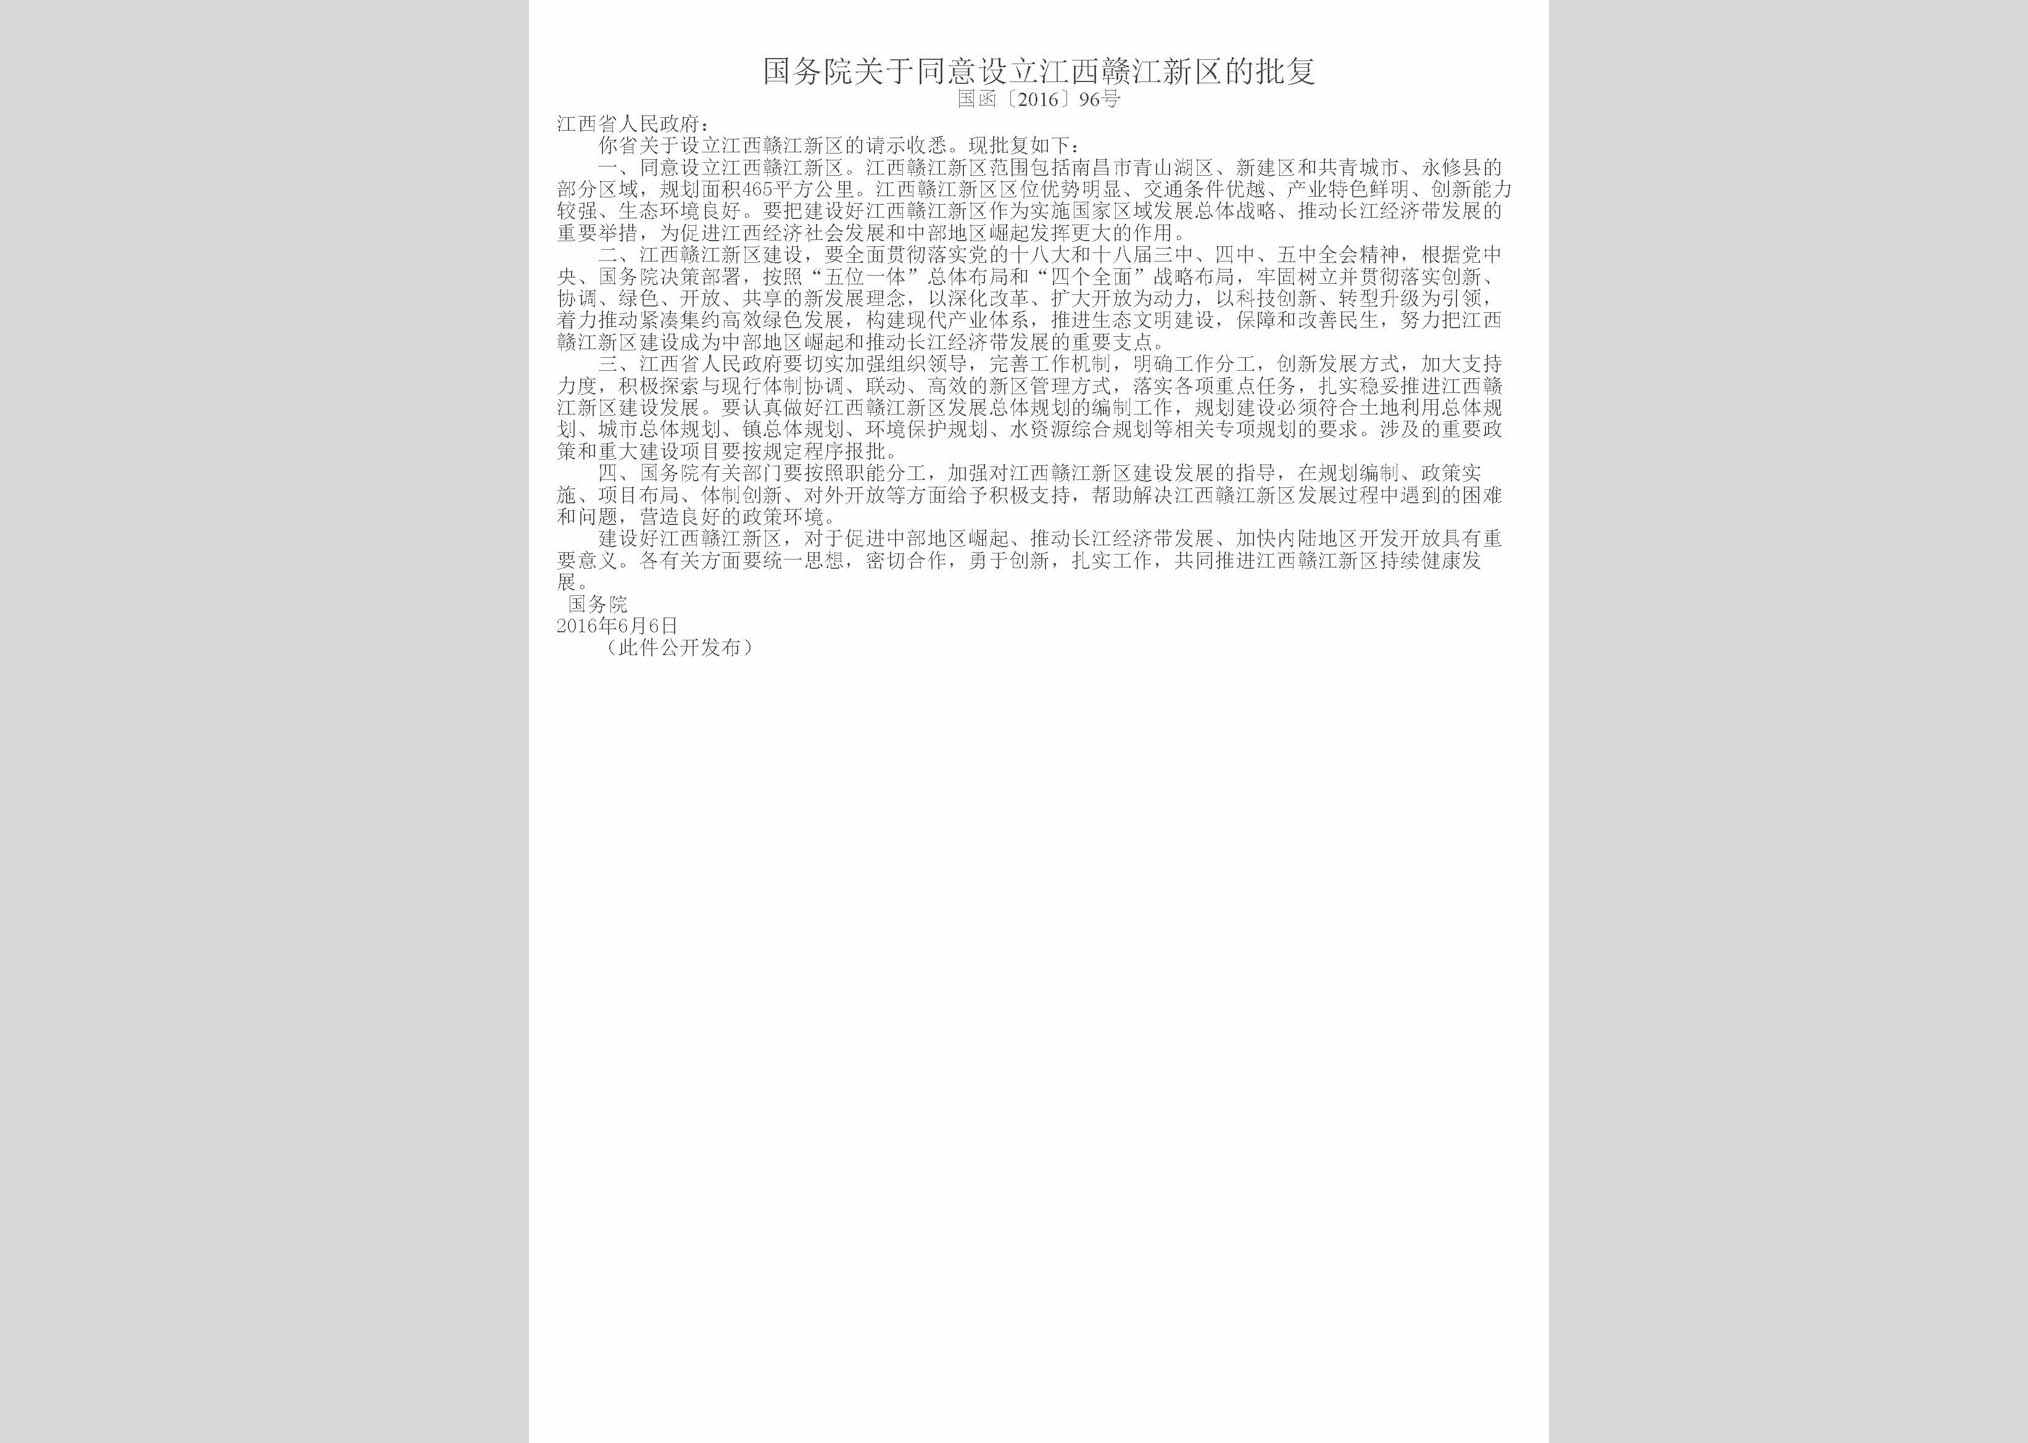 国函[2016]96号：国务院关于同意设立江西赣江新区的批复